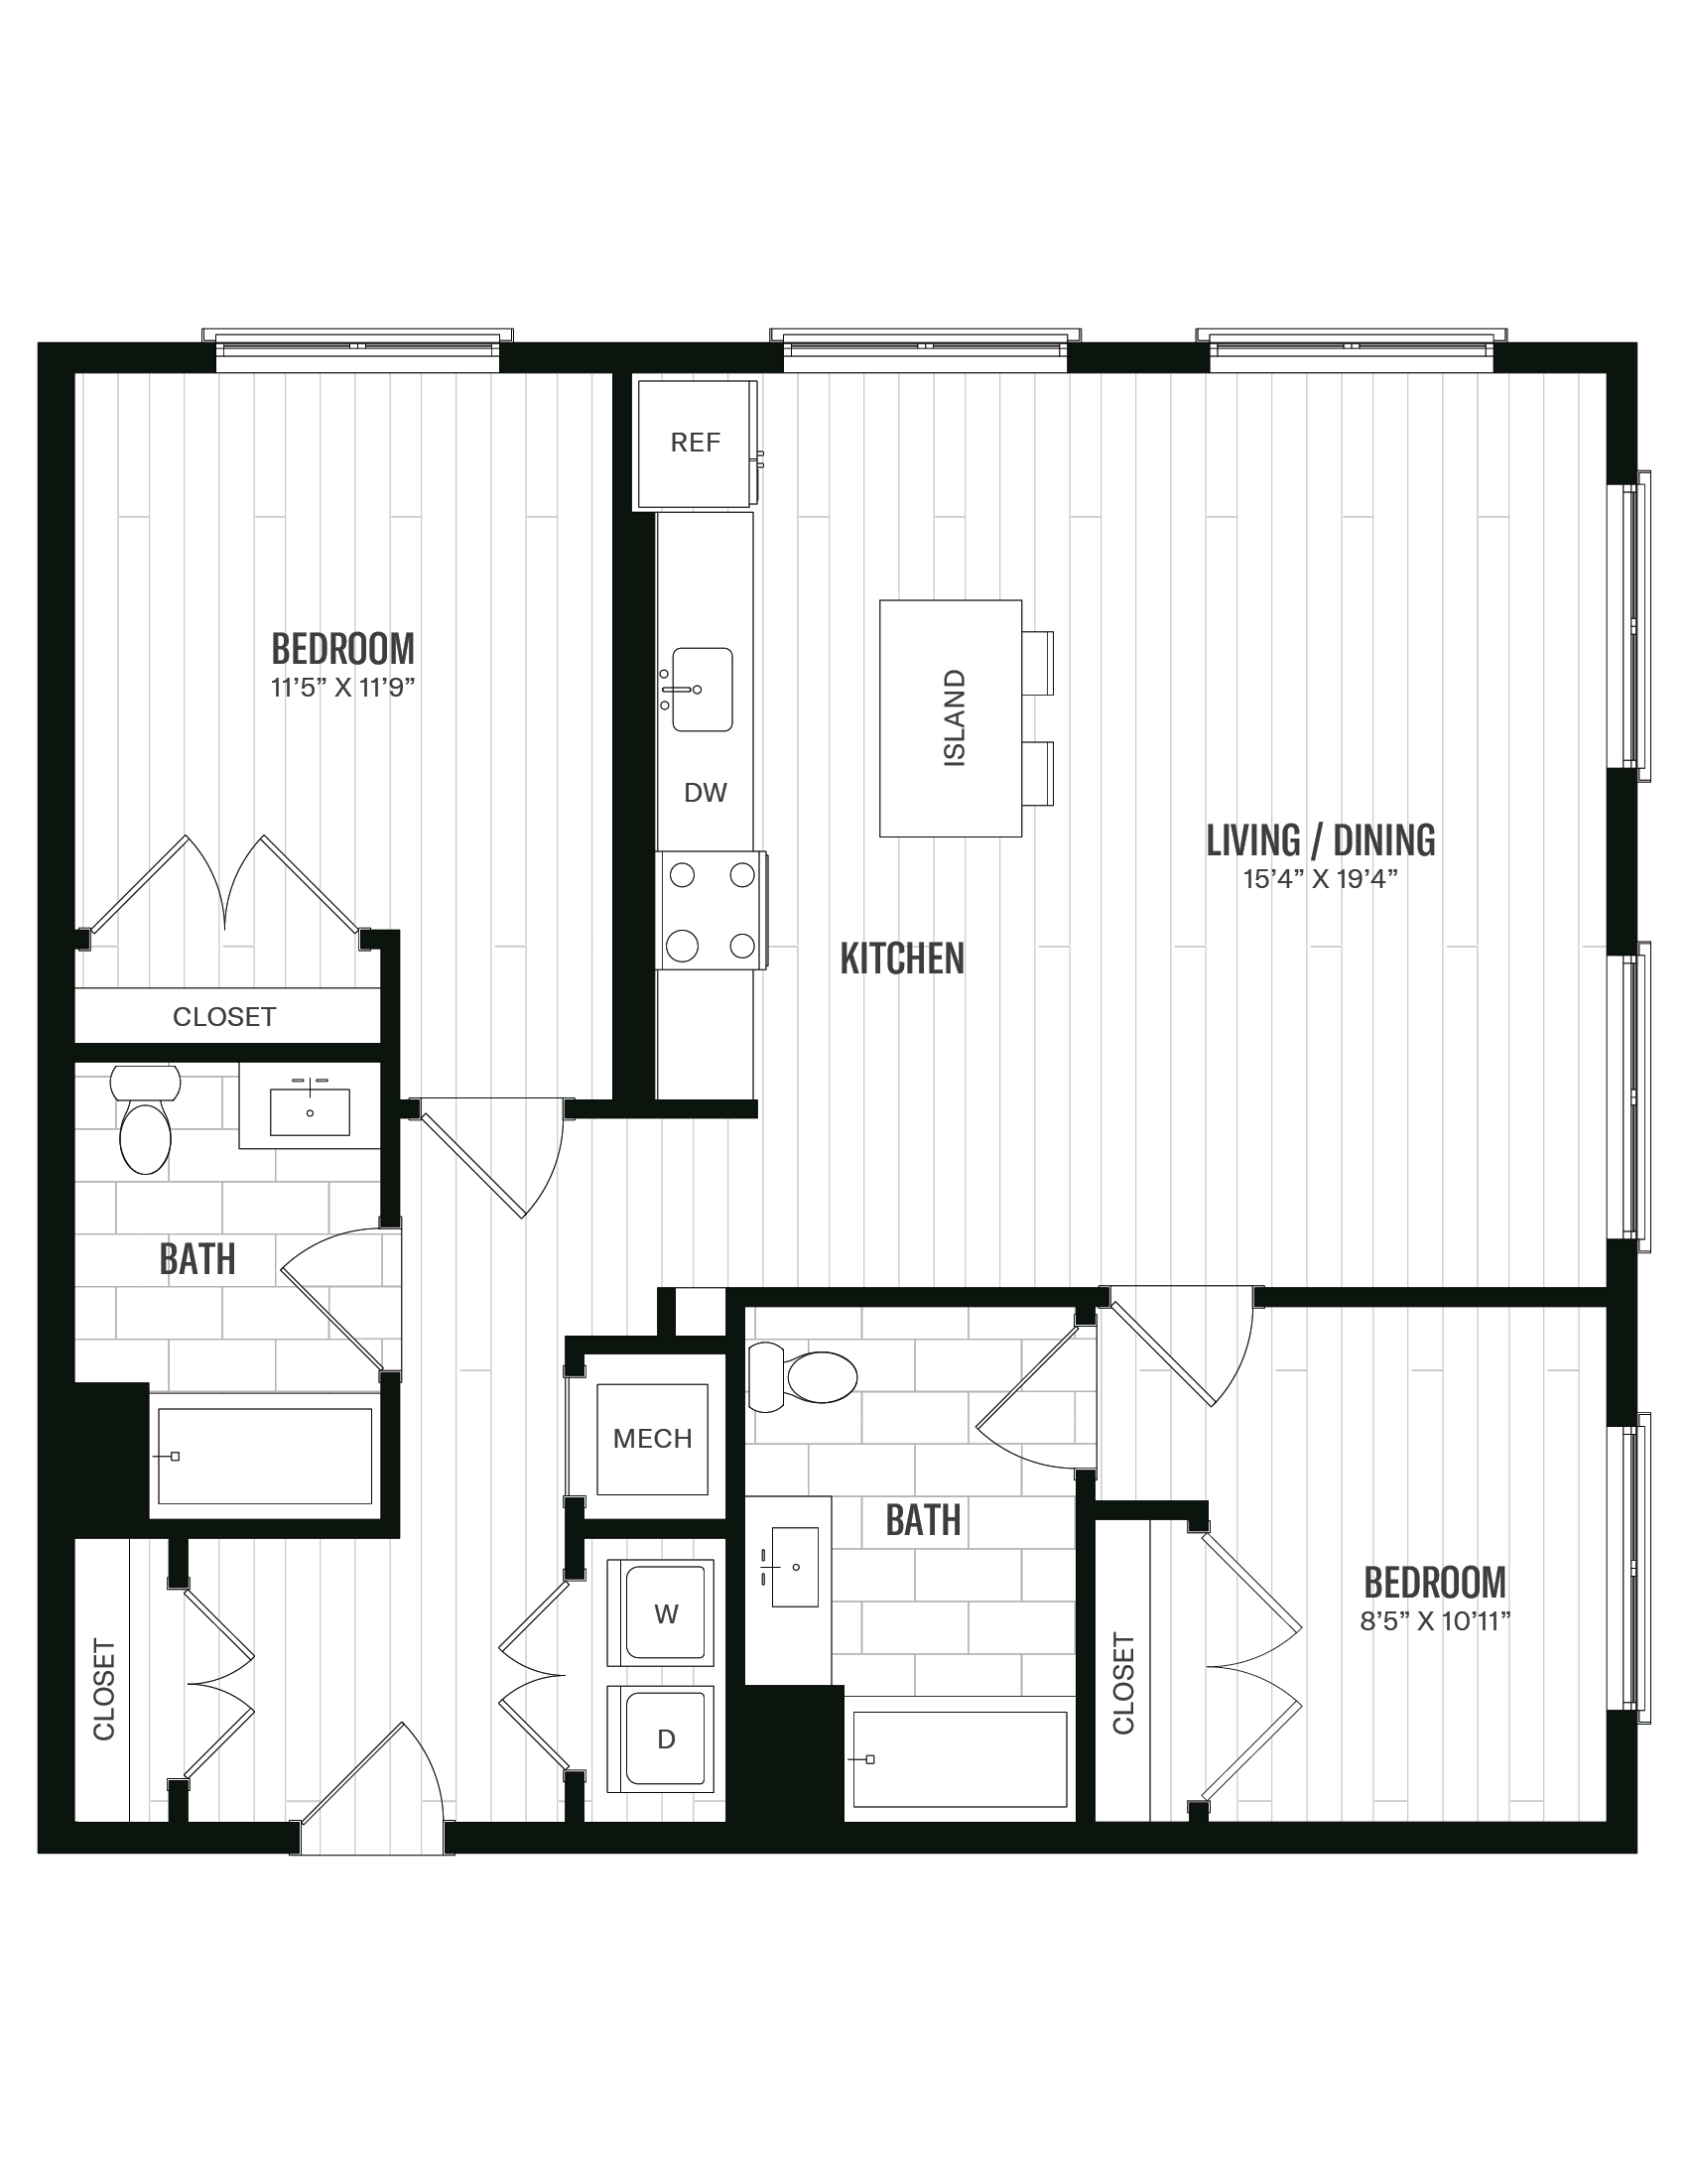 Floorplan image of unit 566